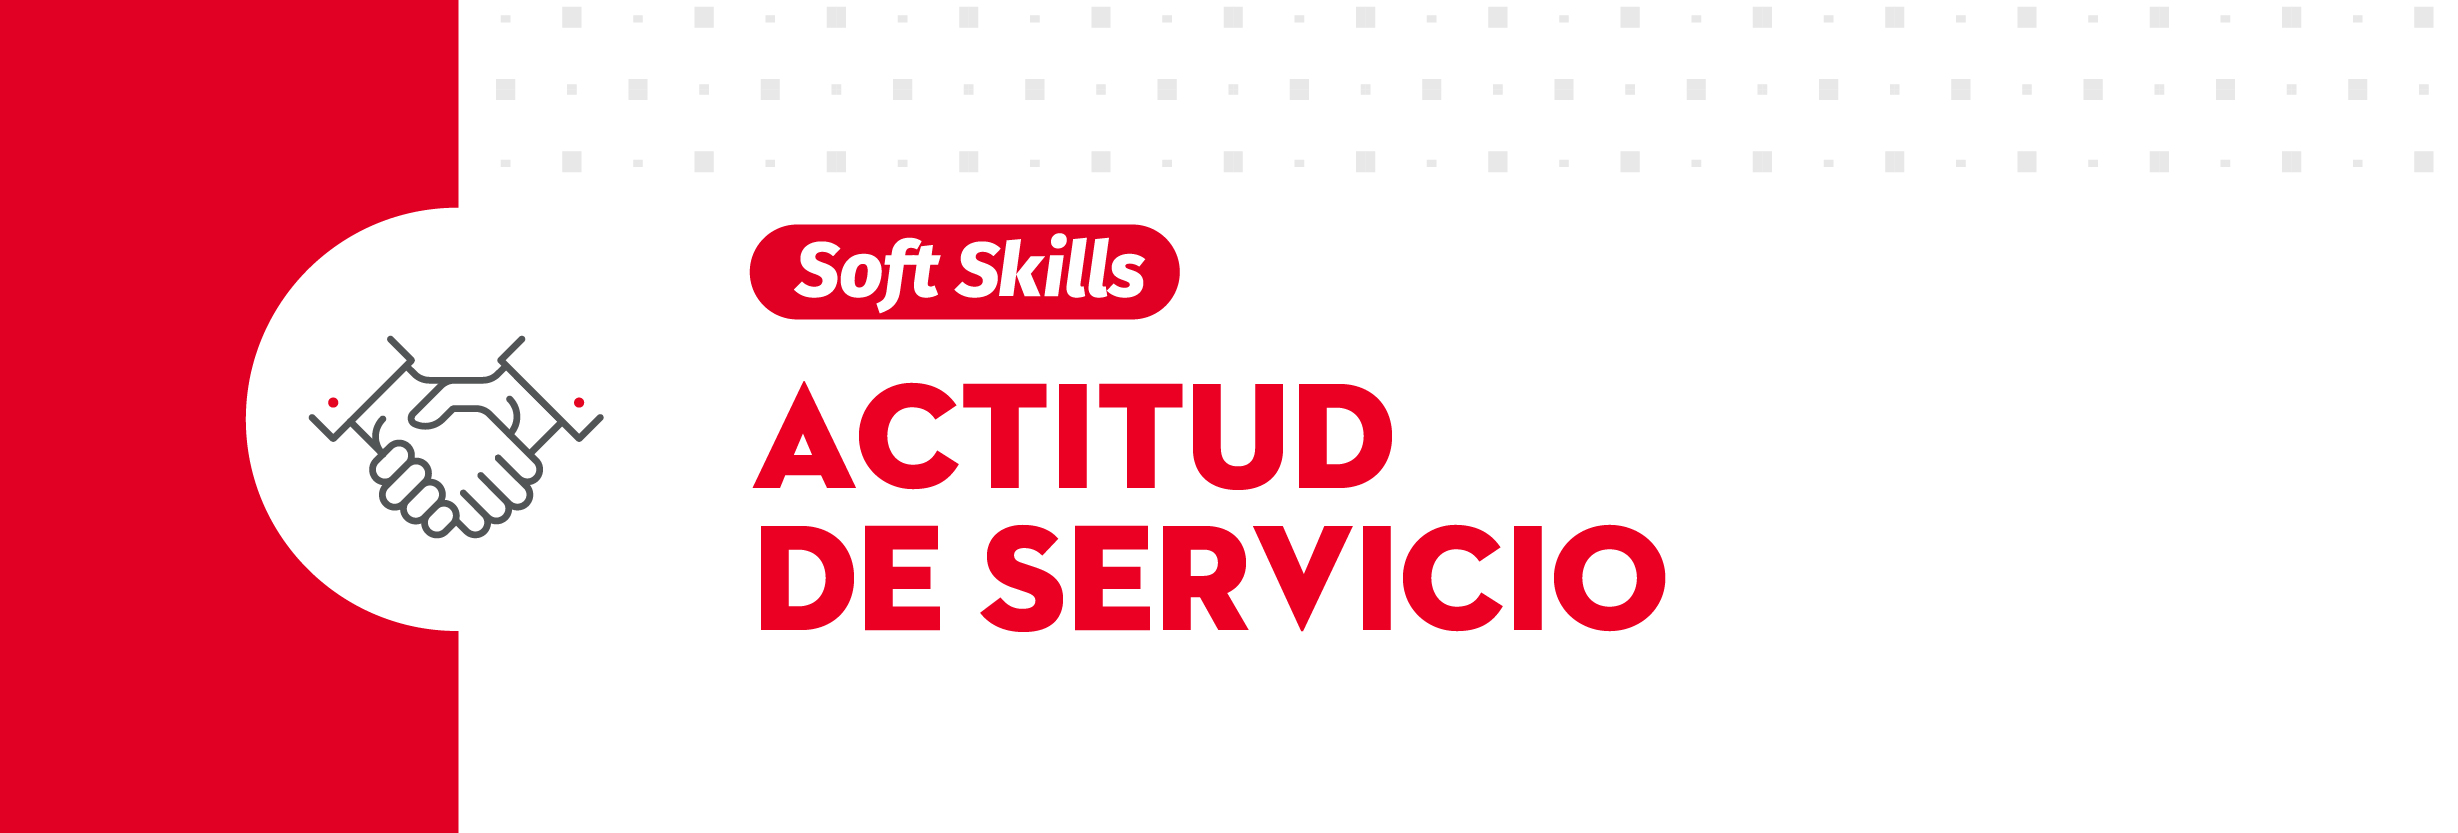 ACTITUD_DE_SERVICIO_UPAEP